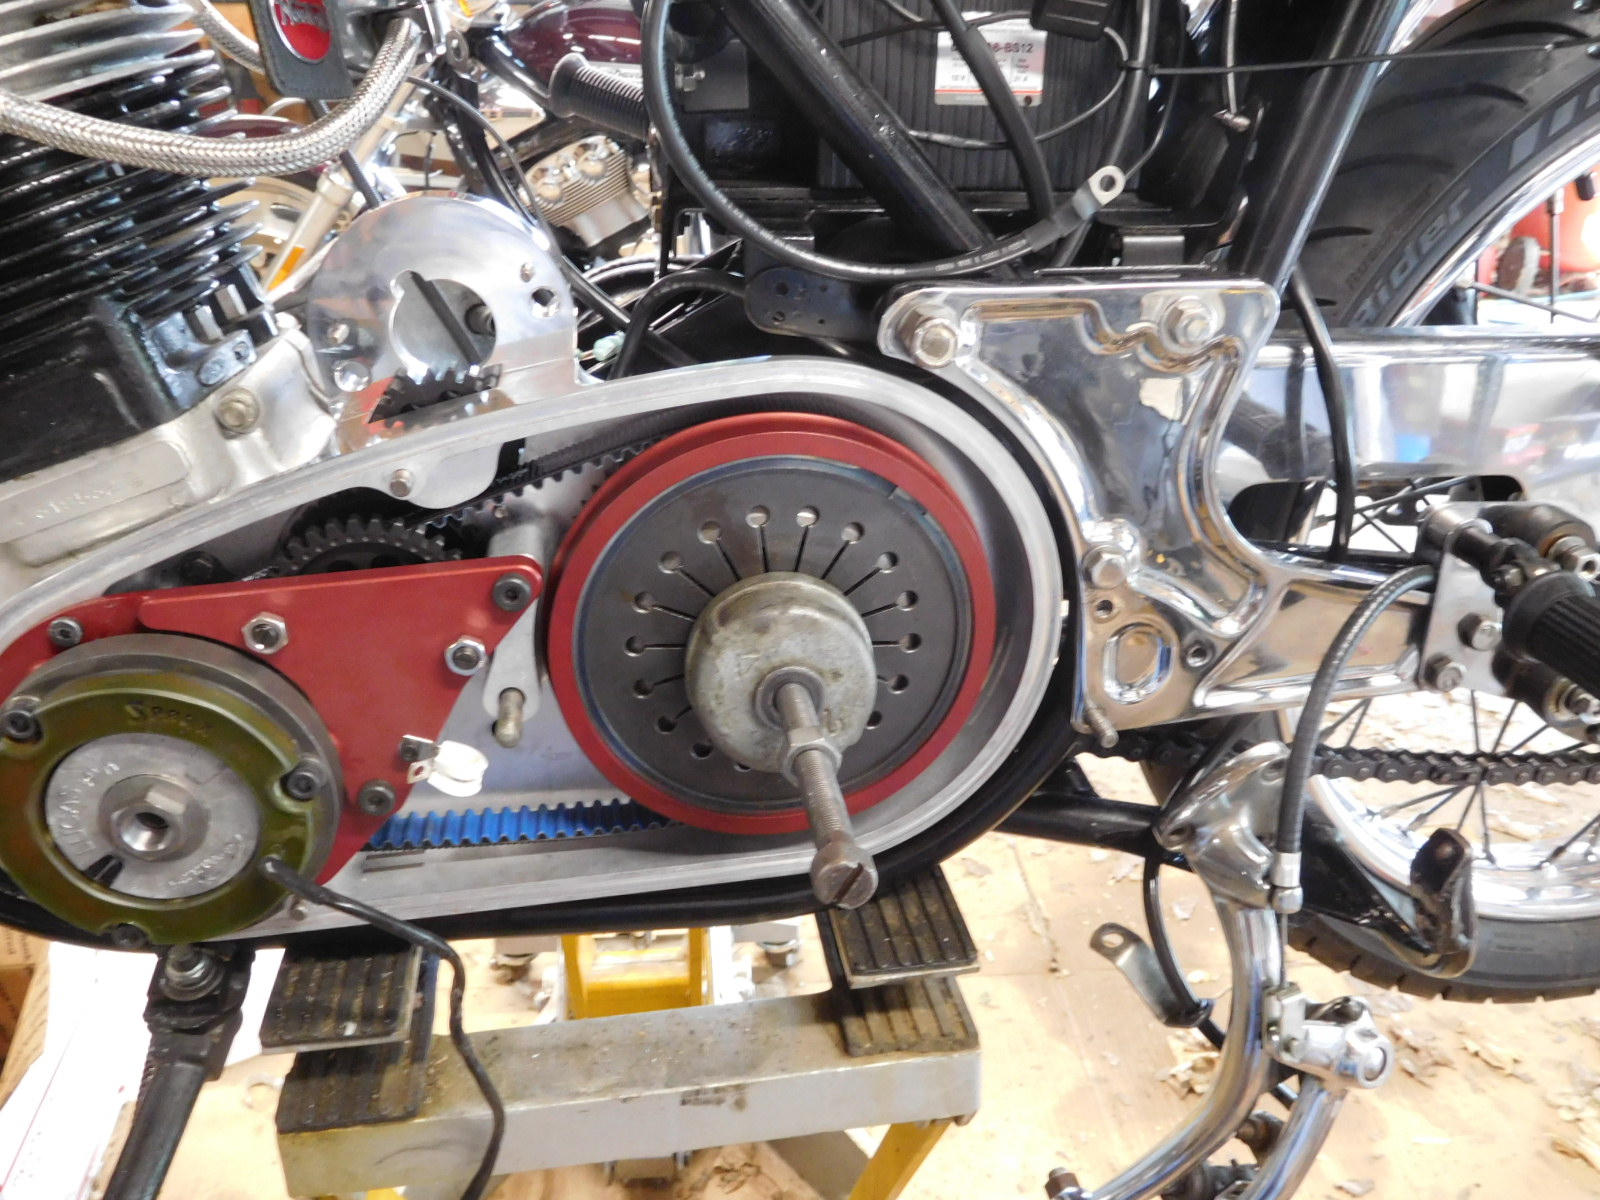 Clutch spring compressor tool